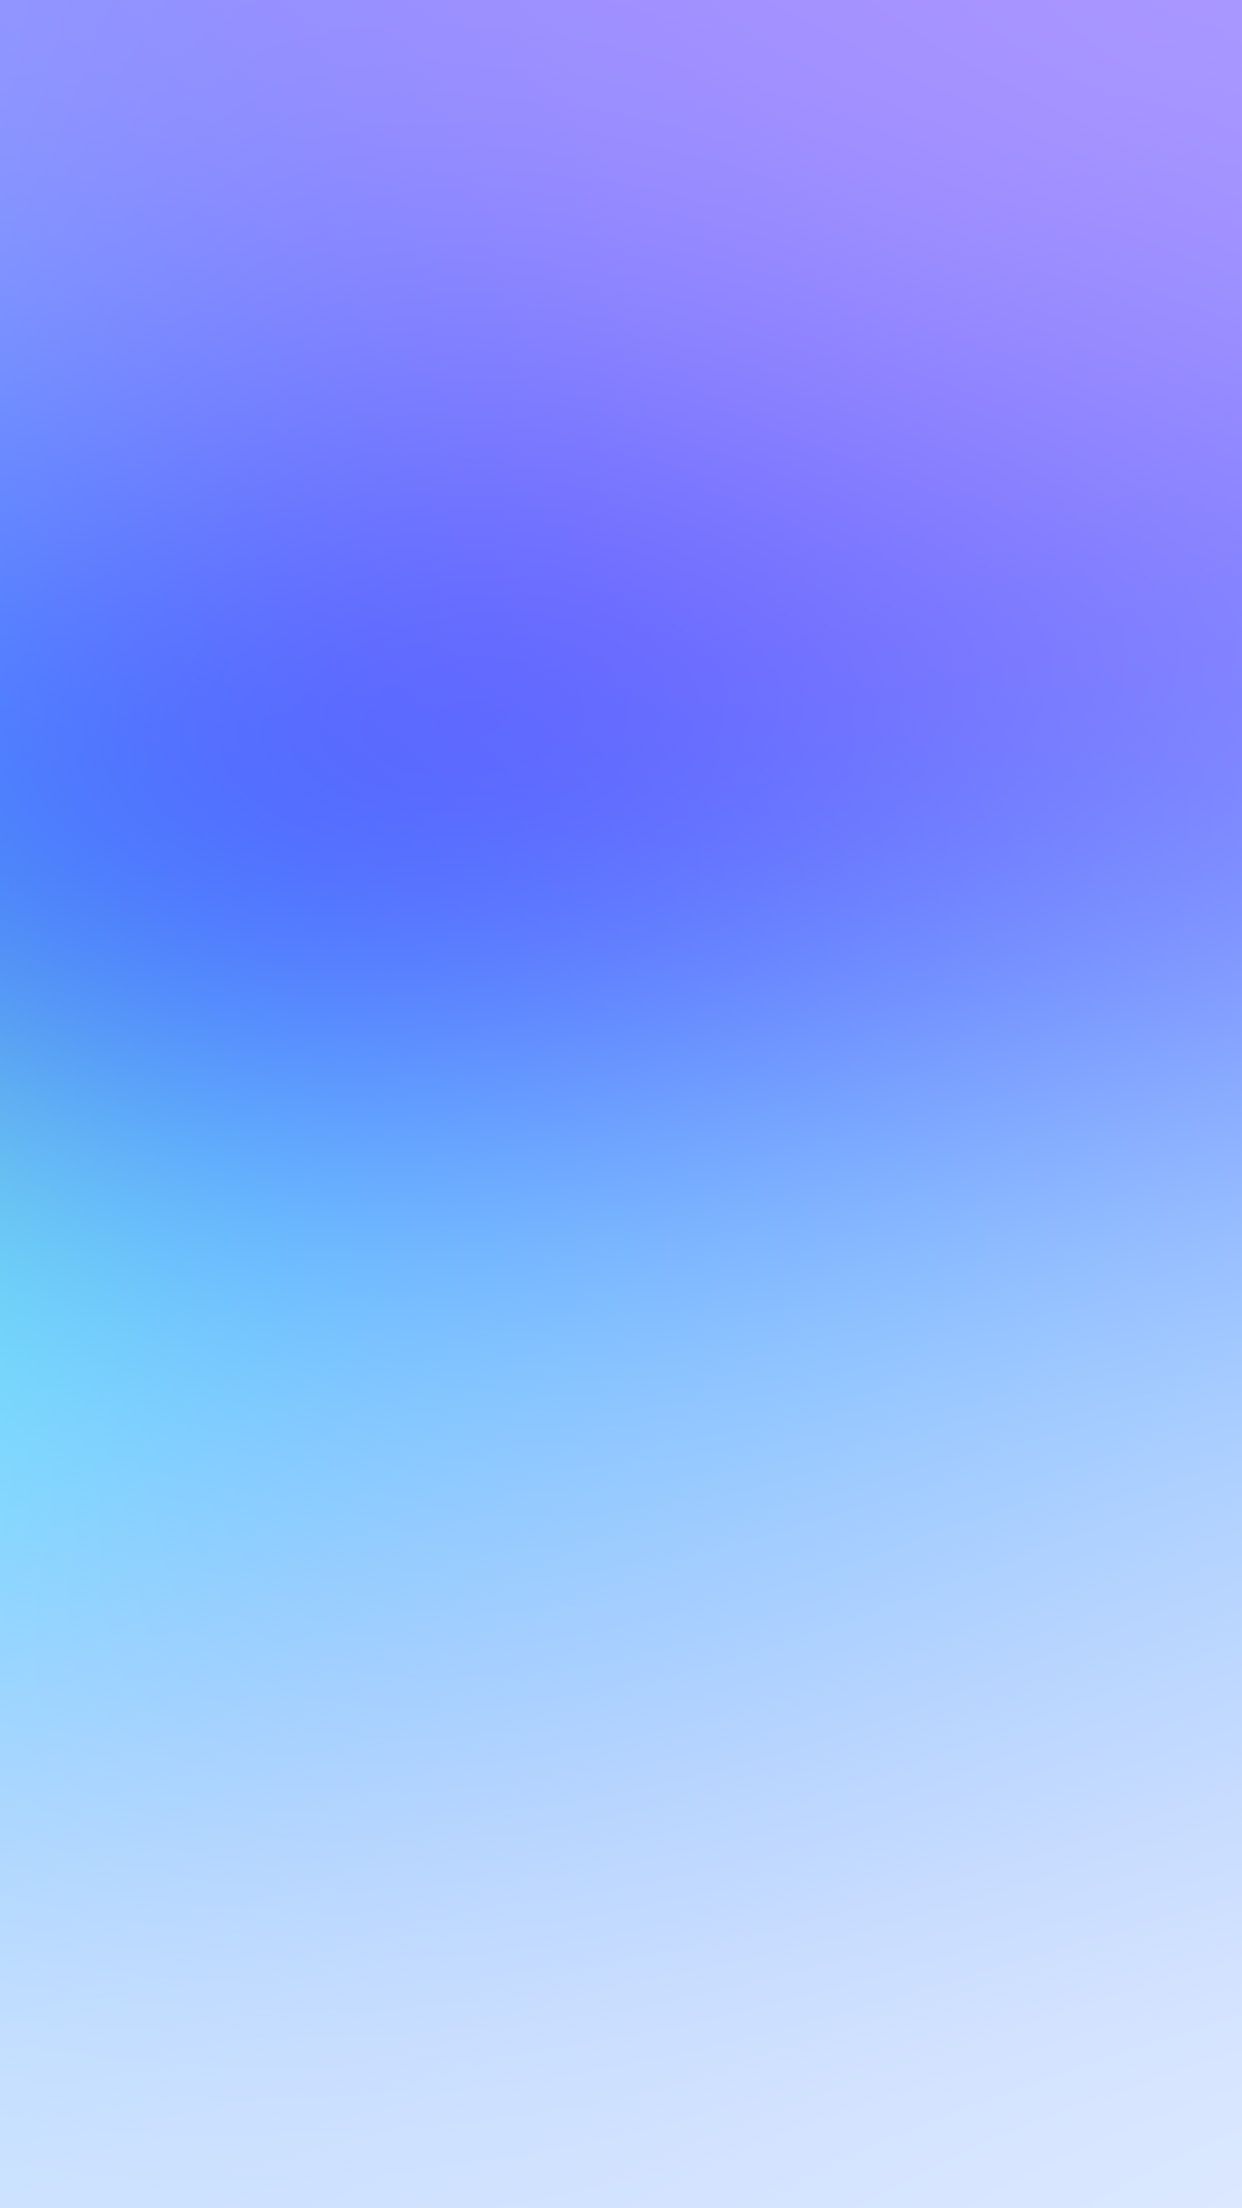 Sj17 Blue Fantasy Pastel Purple Gradation Blur Blue Ombre